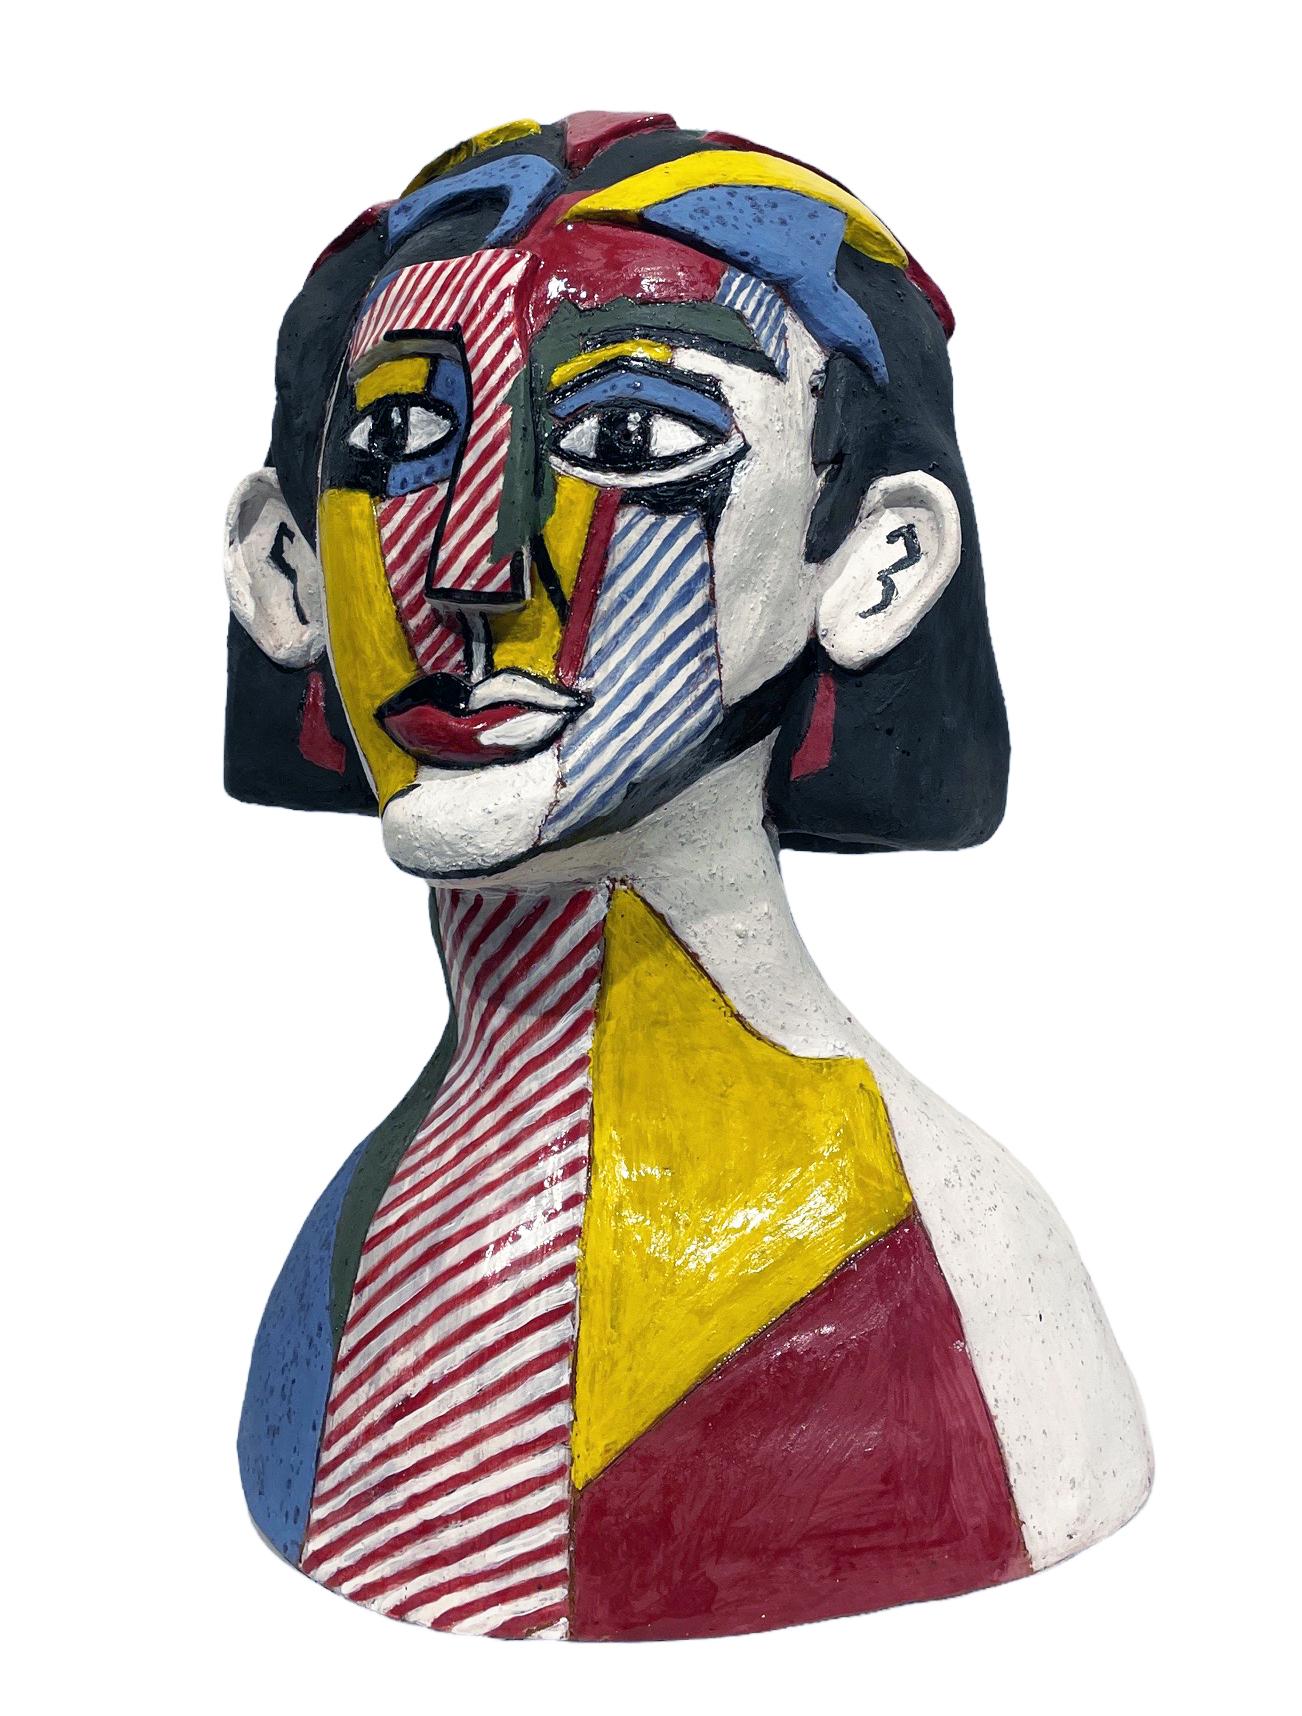 Sandy Kaplan Figurative Sculpture - Lichtenstein's Portrait of a Woman - Ode to Roy Lichtenstein, Hand Built Ceramic